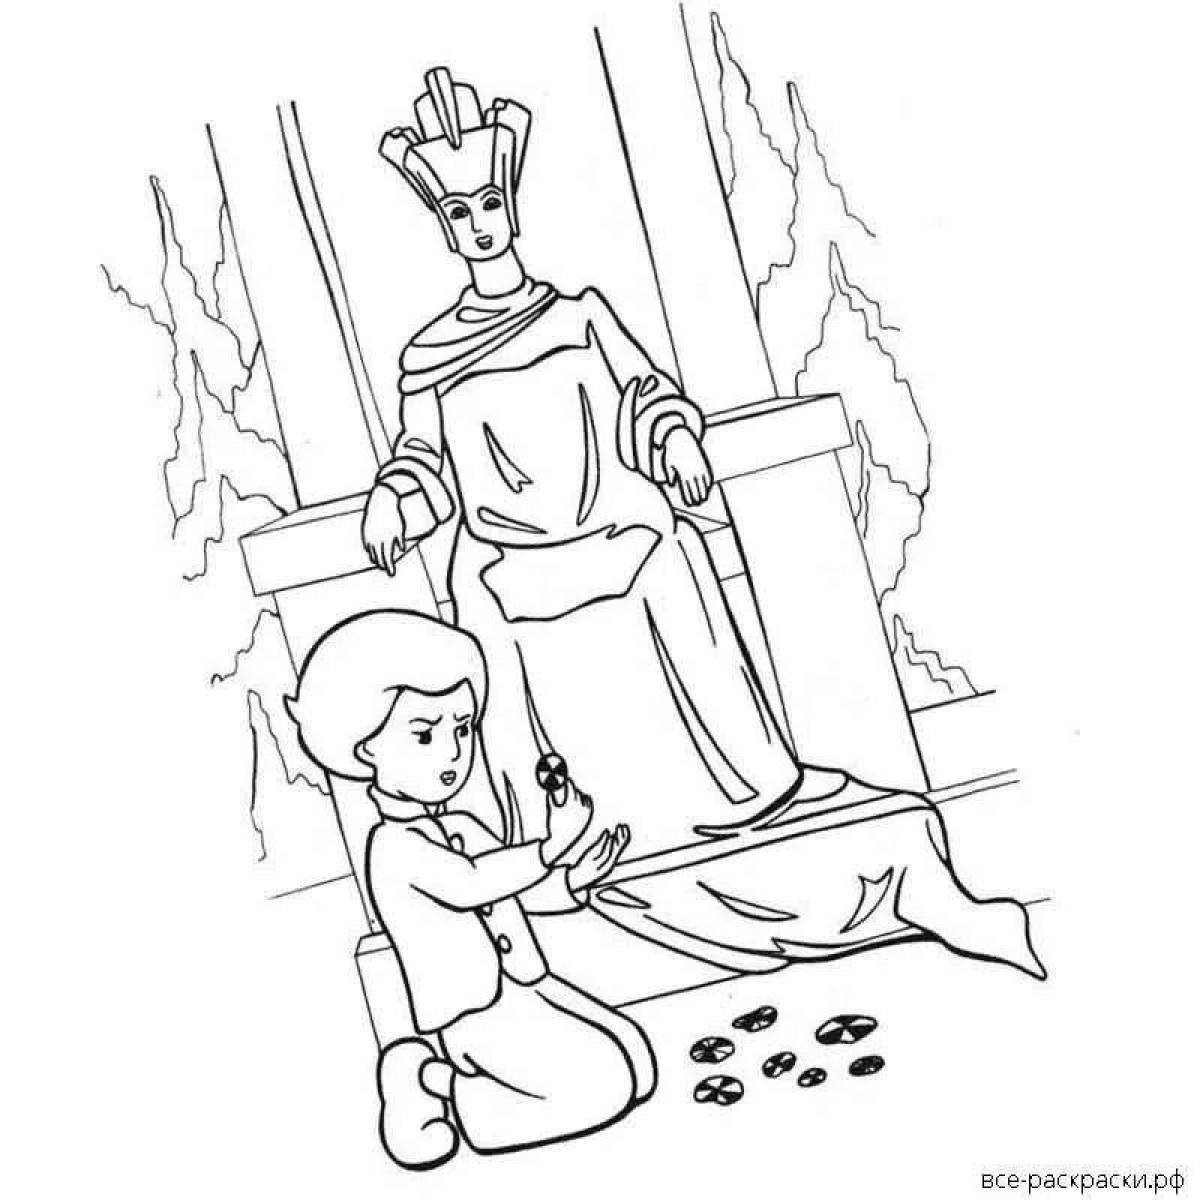 Иллюстрация к снежной королеве 5 класс